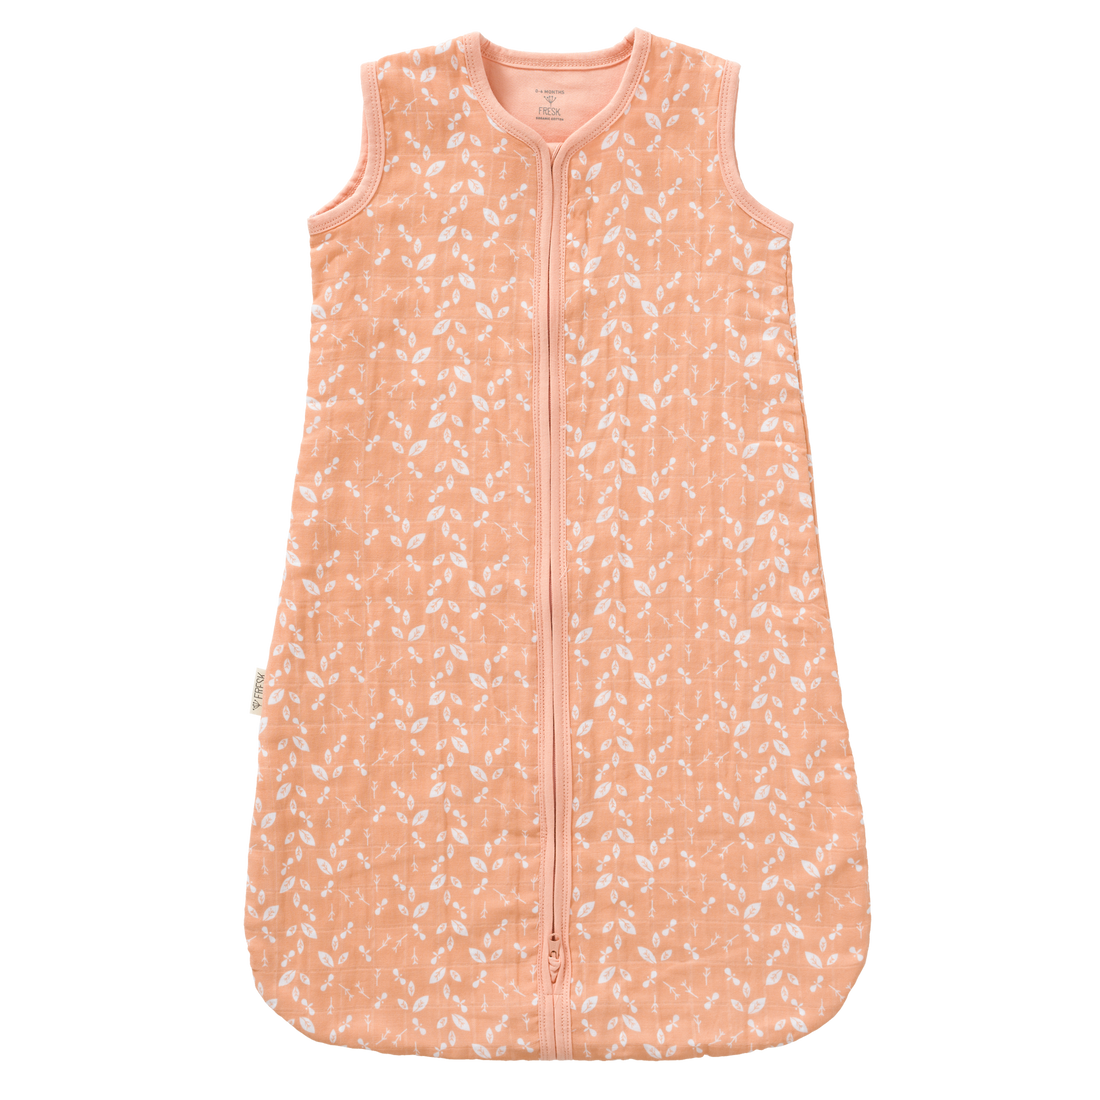 Baby Sommerschlafsack aus Biobaumwolle, rosa mit Blätterprint in weiß, fair produziert von Fresk